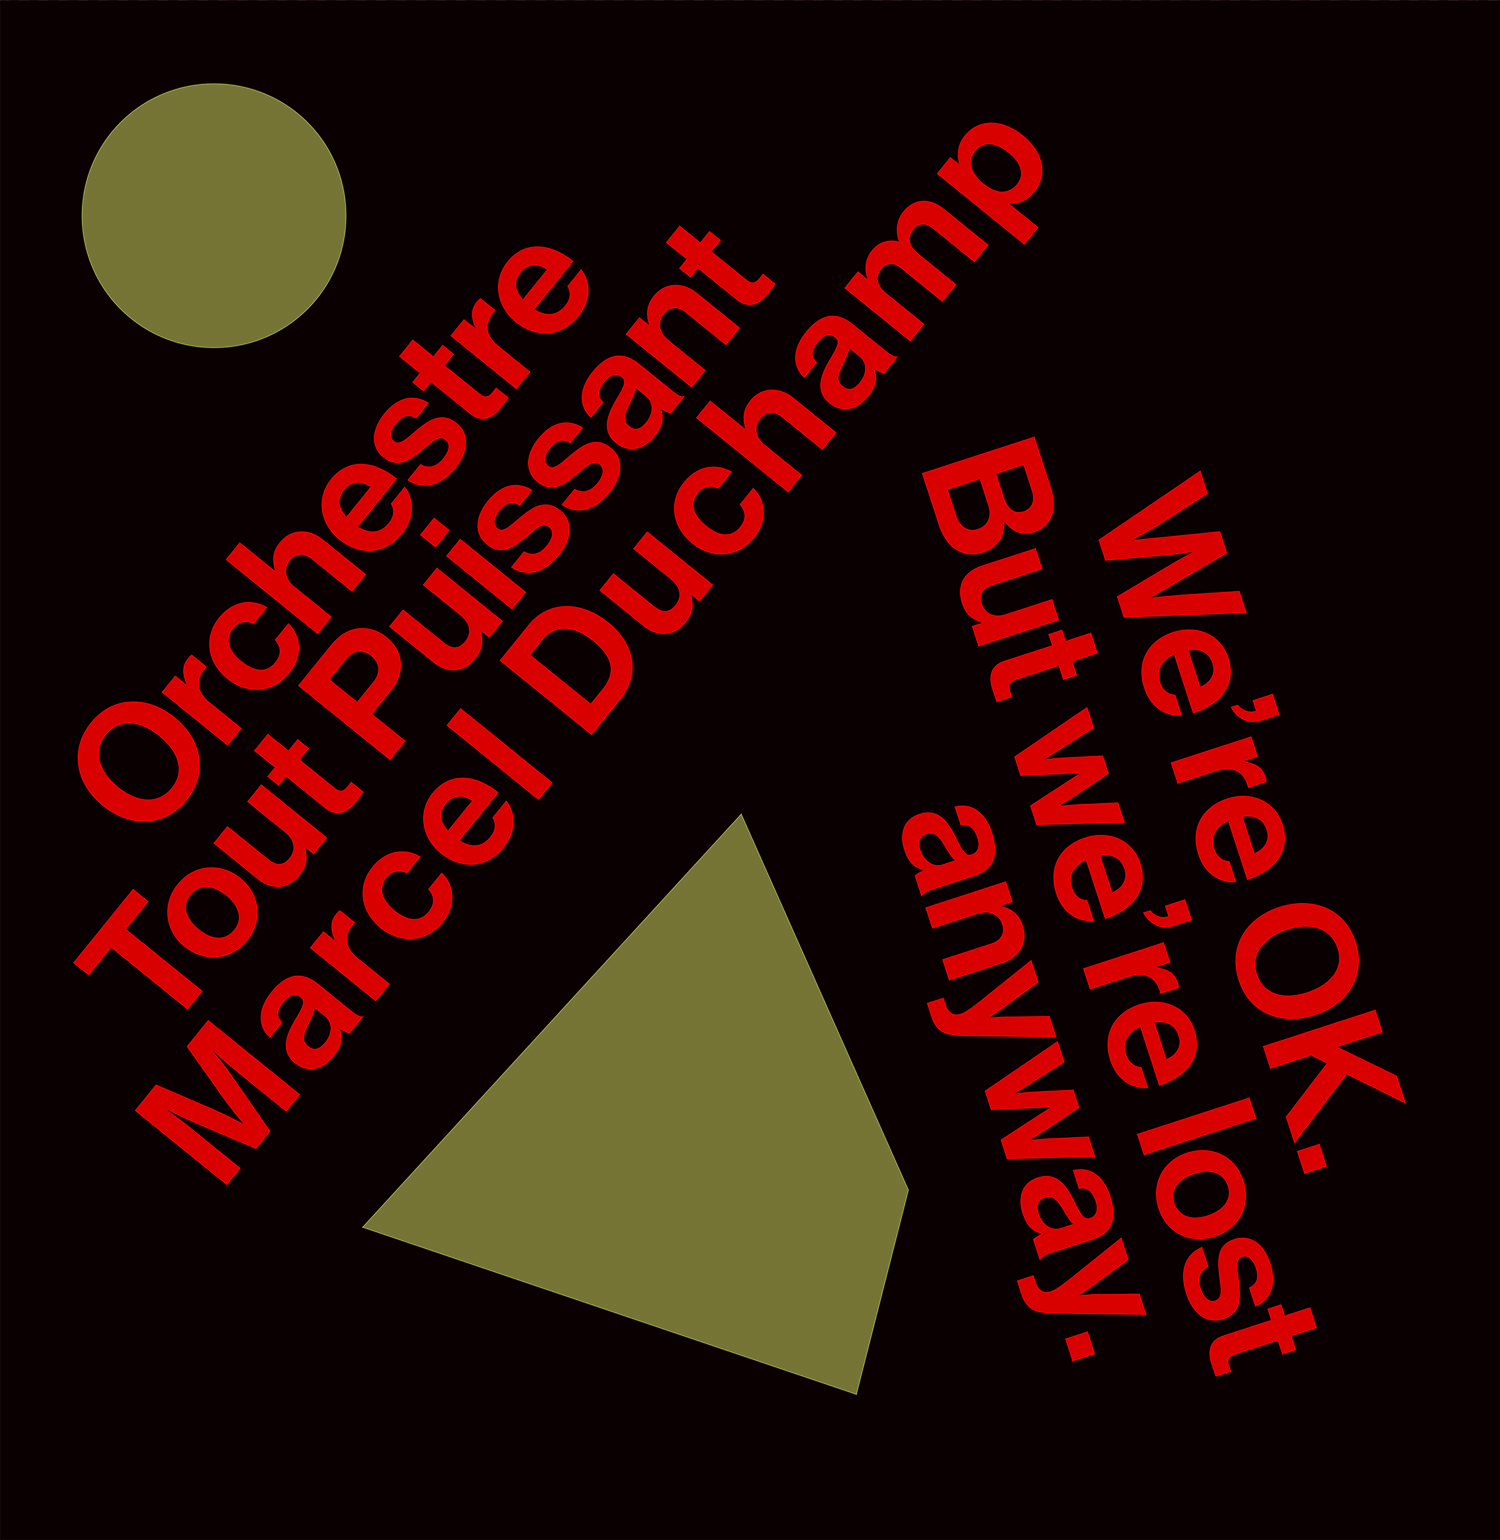 album by Orchestre Tout Puissant Marcel Duchamp